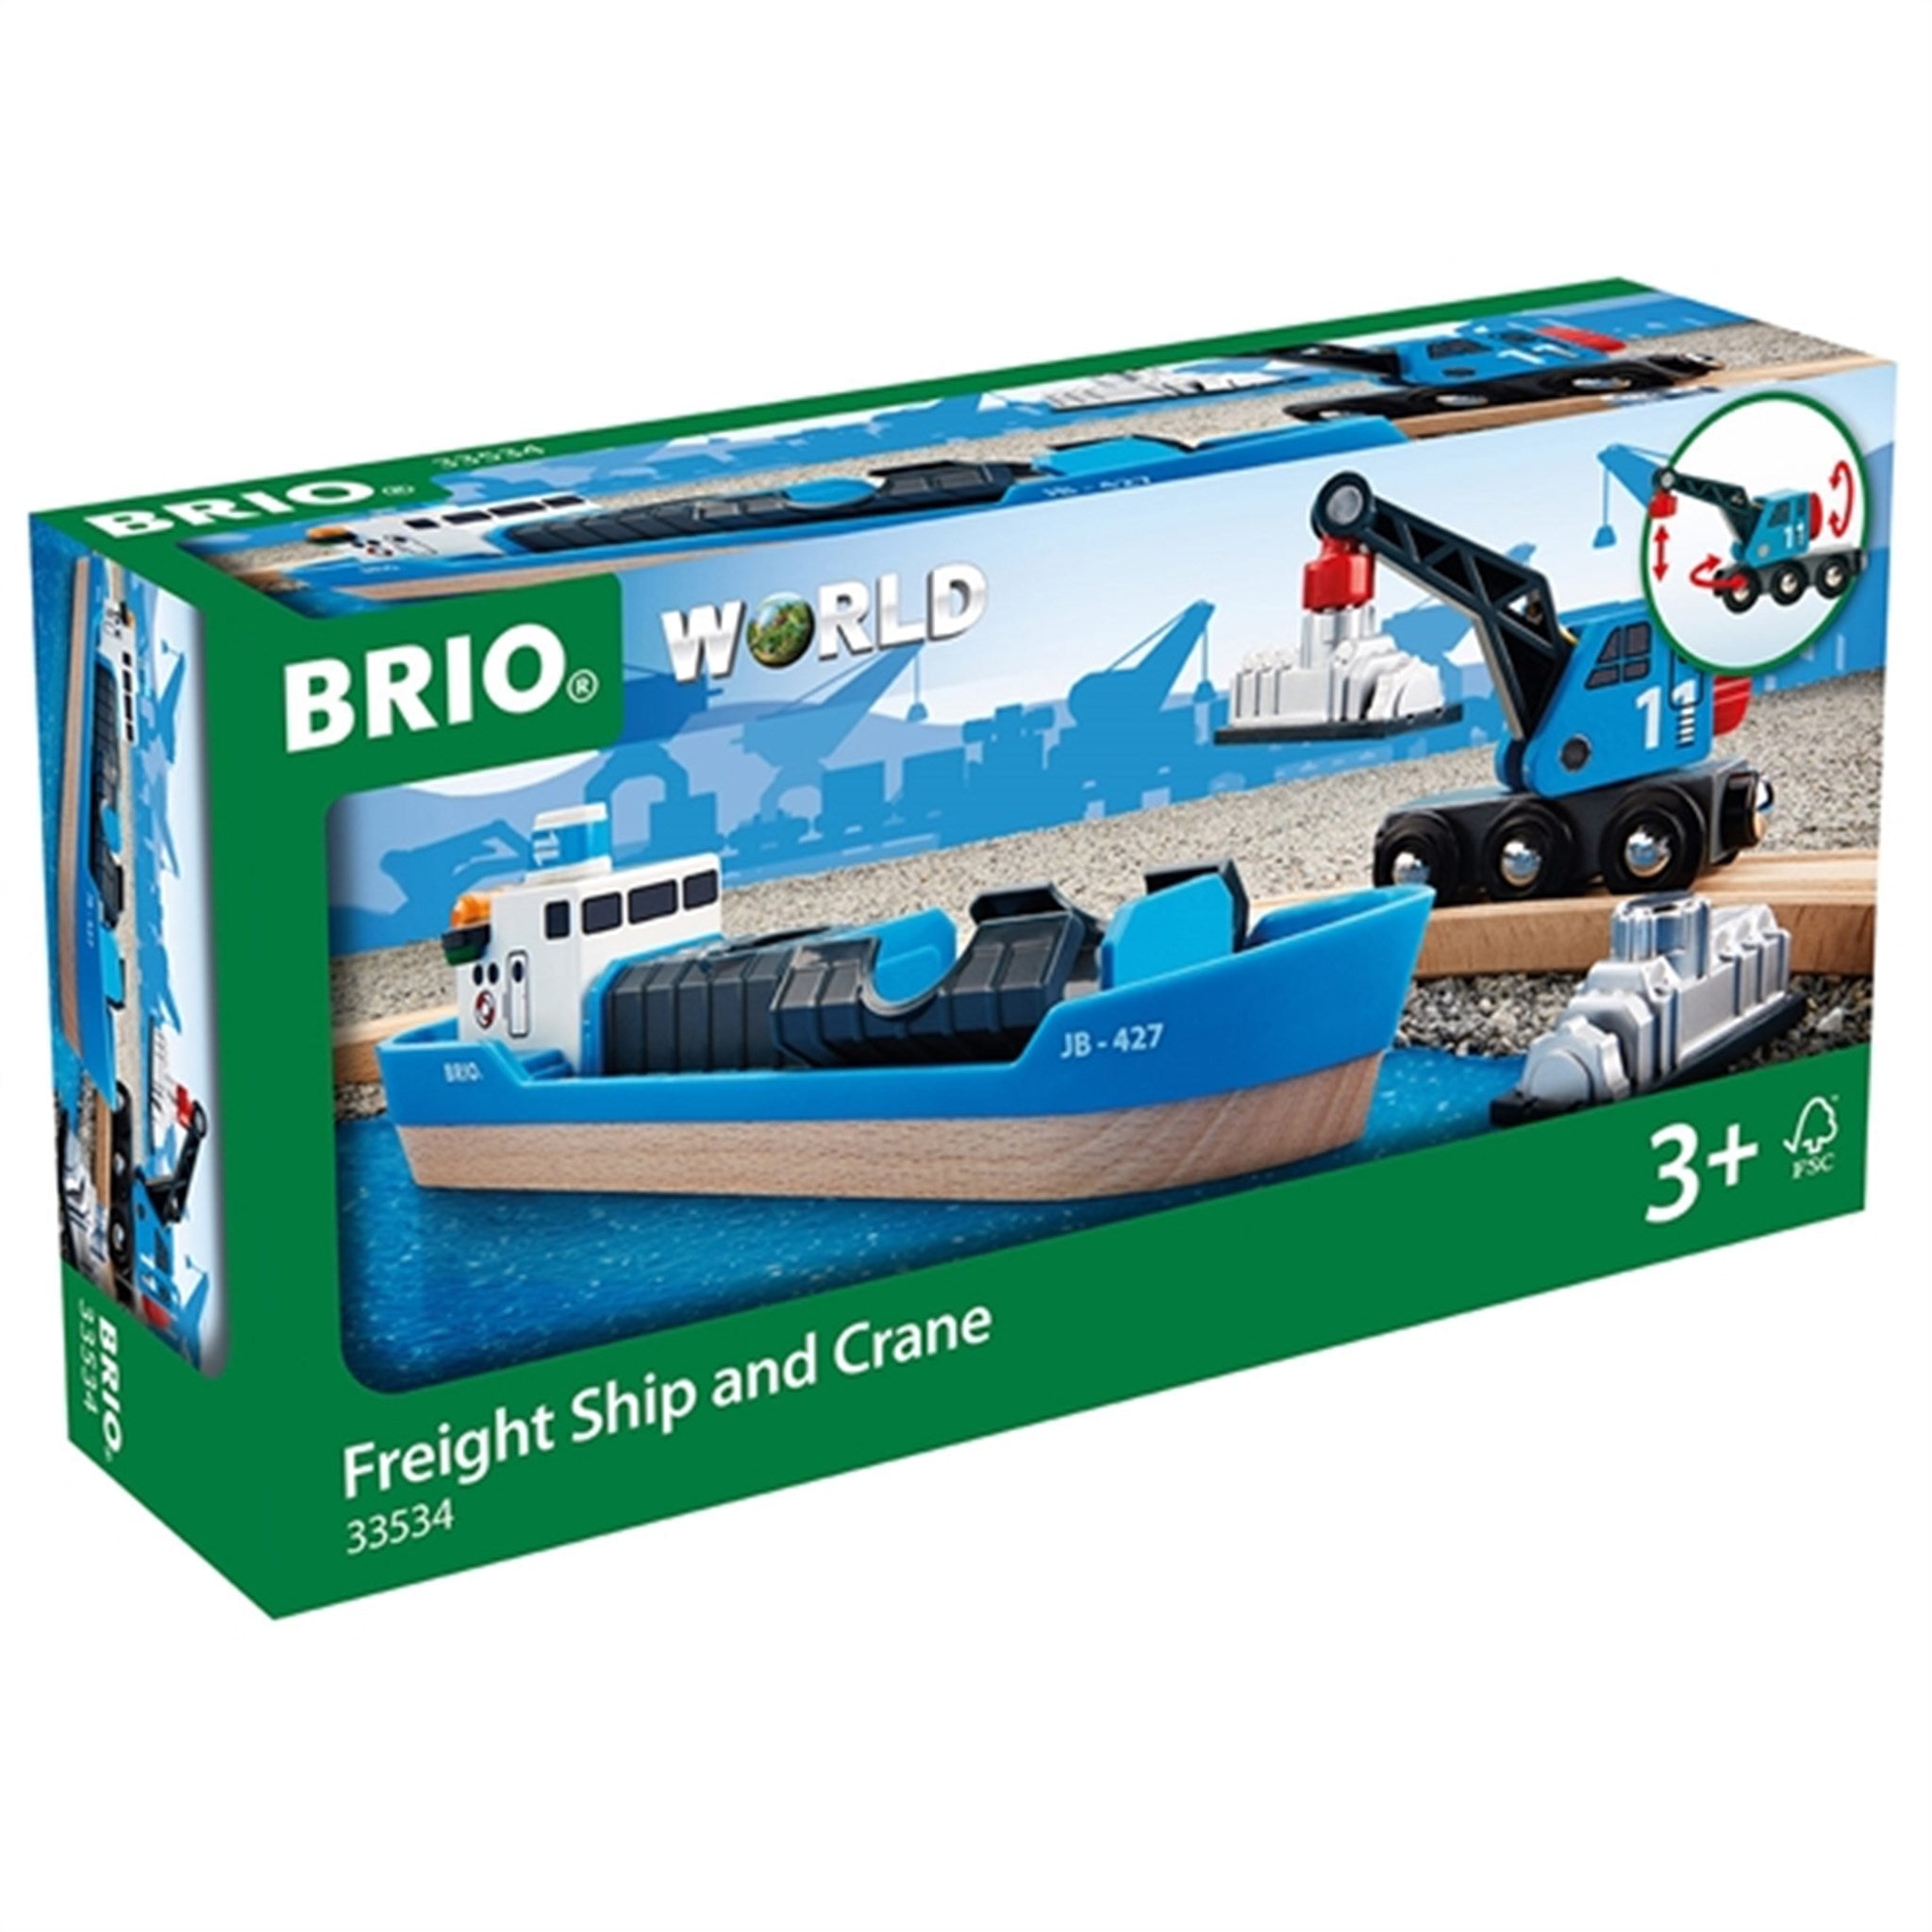 BRIO® Freight Ship & Crane 2